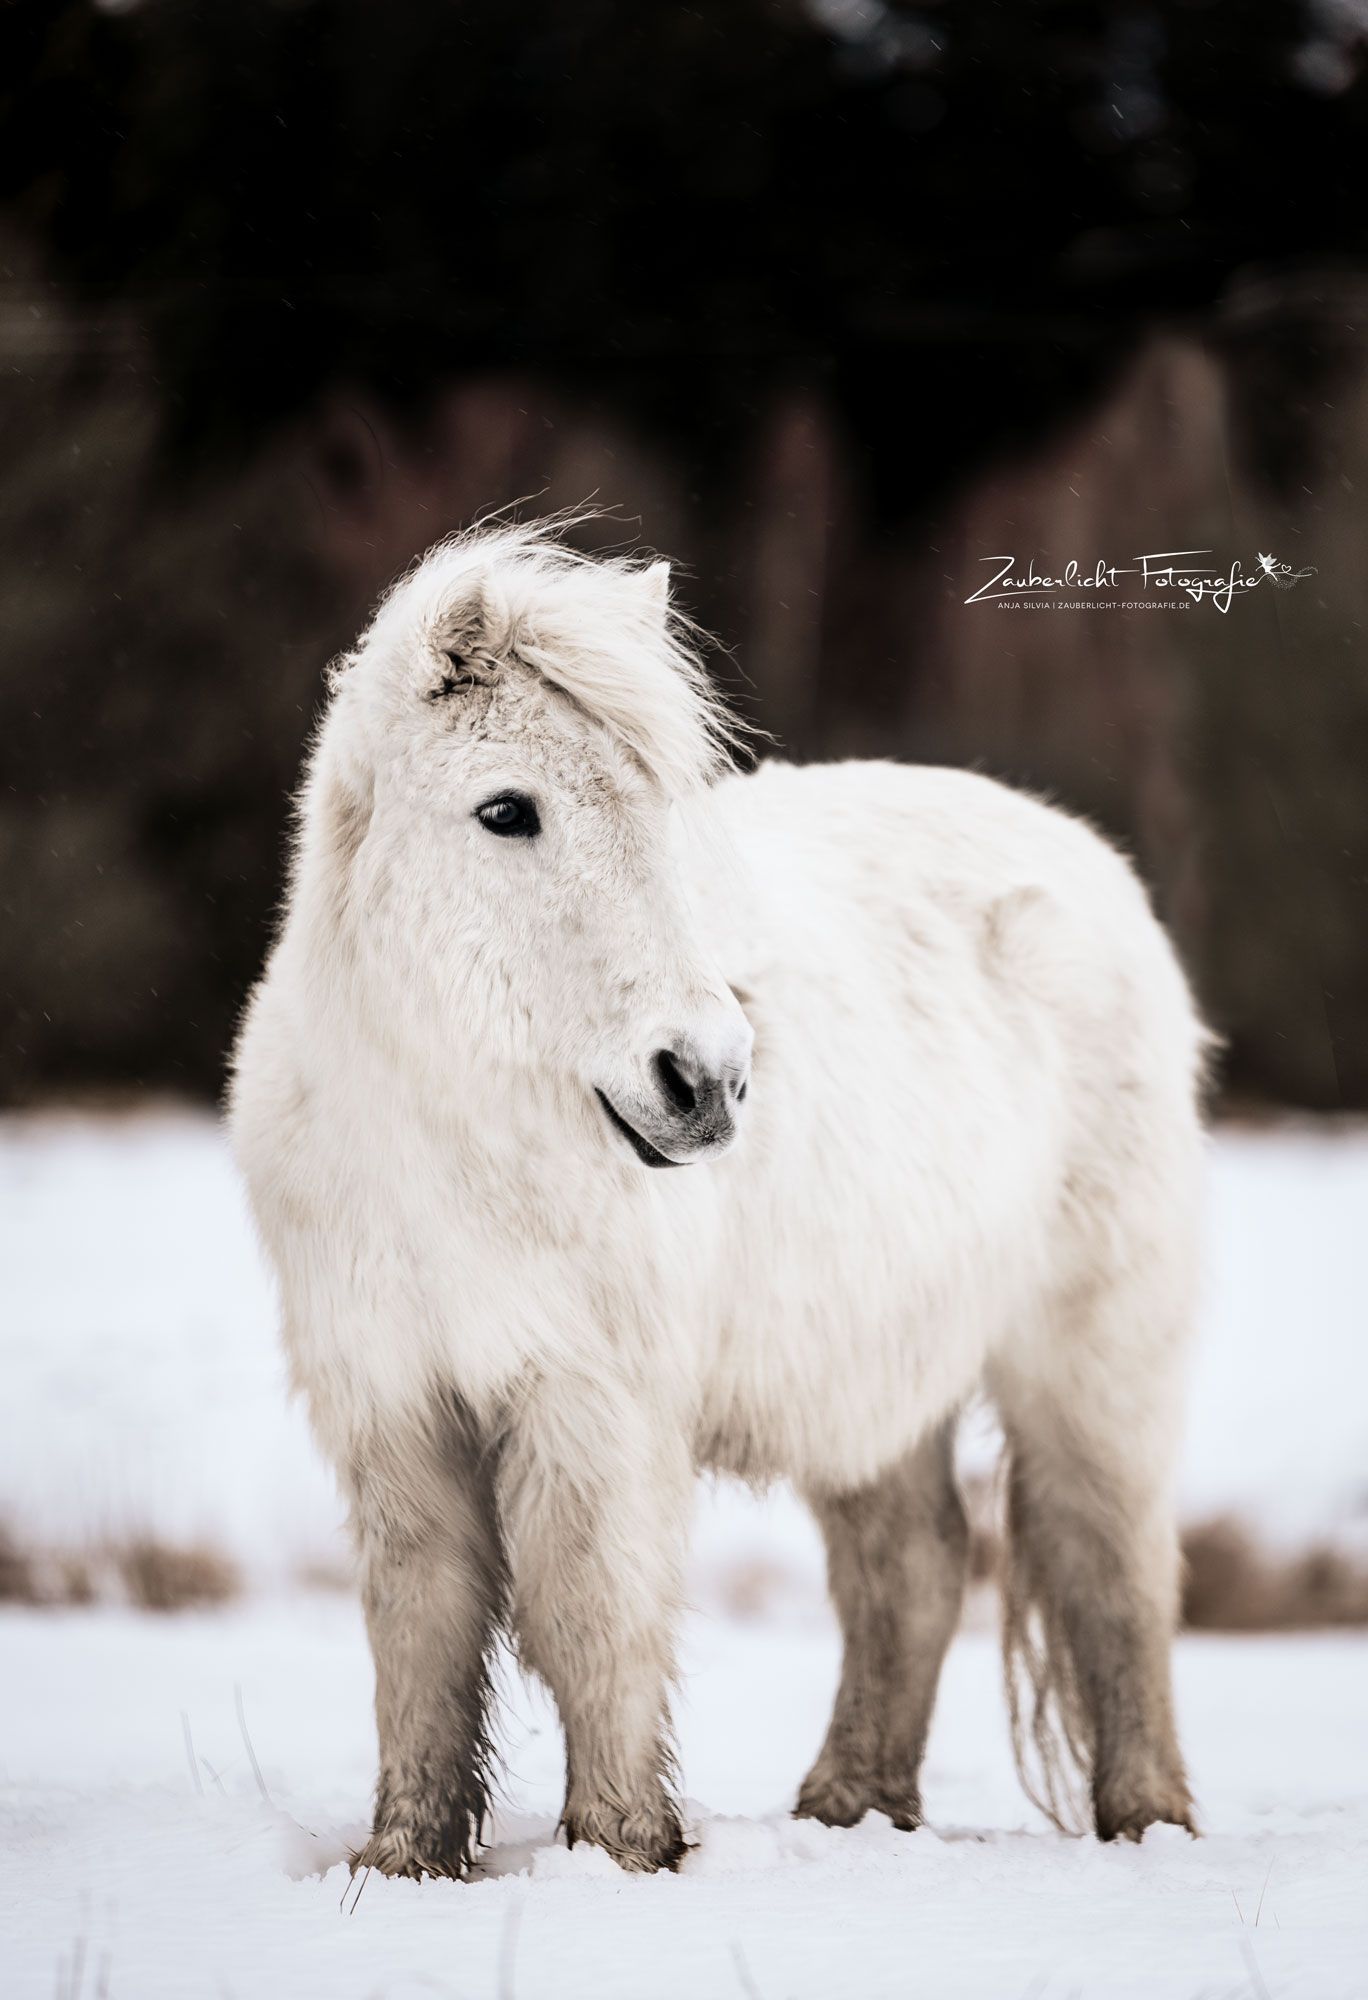  Pferde Im Schnee Hintergrundbild 1368x2000. Shetland Pony im Schnee. Niedliche pferde, Pferderassen, Schöne pferde